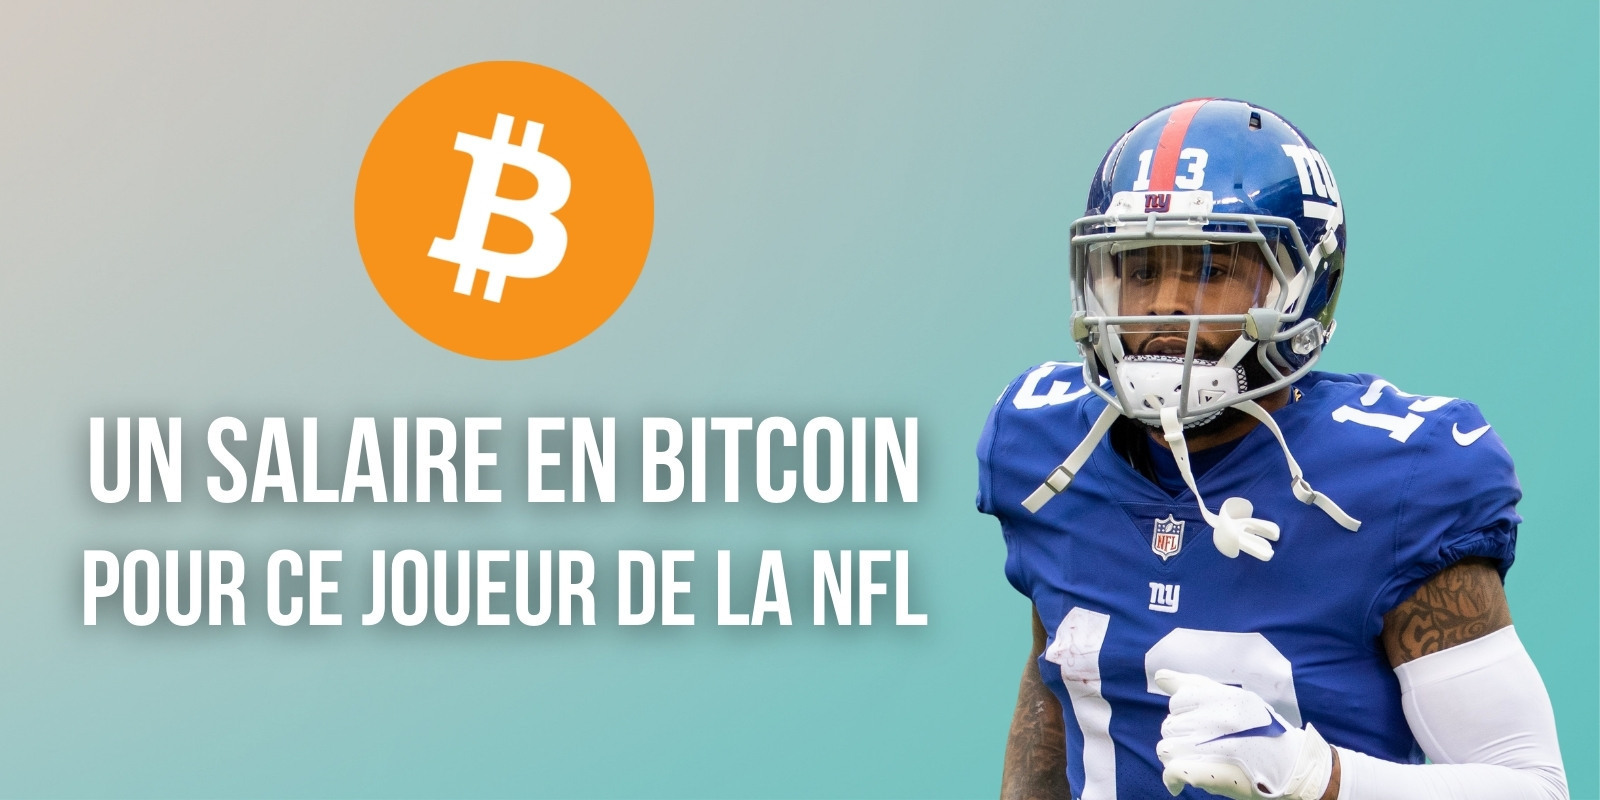 Odell Beckham Jr, joueur de la NFL, va percevoir son nouveau salaire en Bitcoin (BTC)